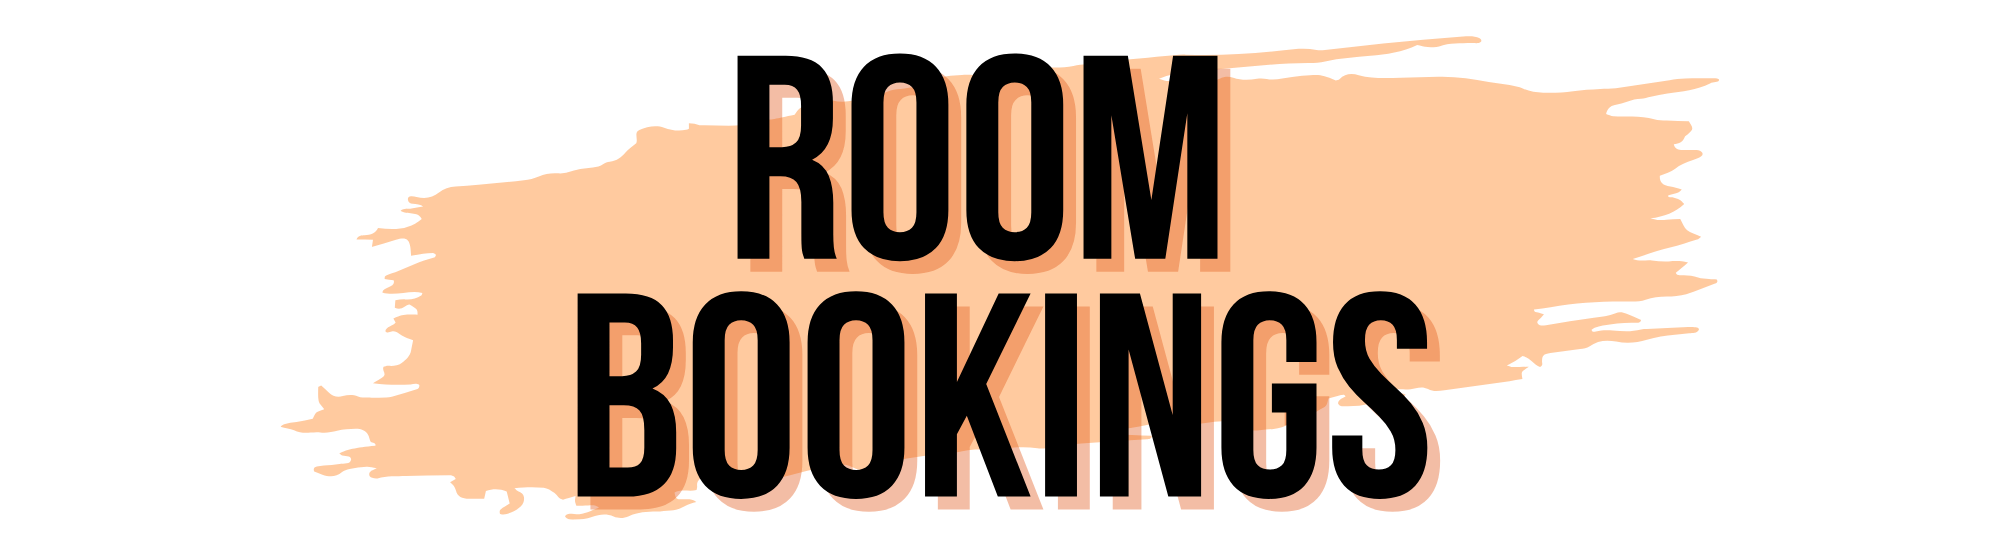 room bookings